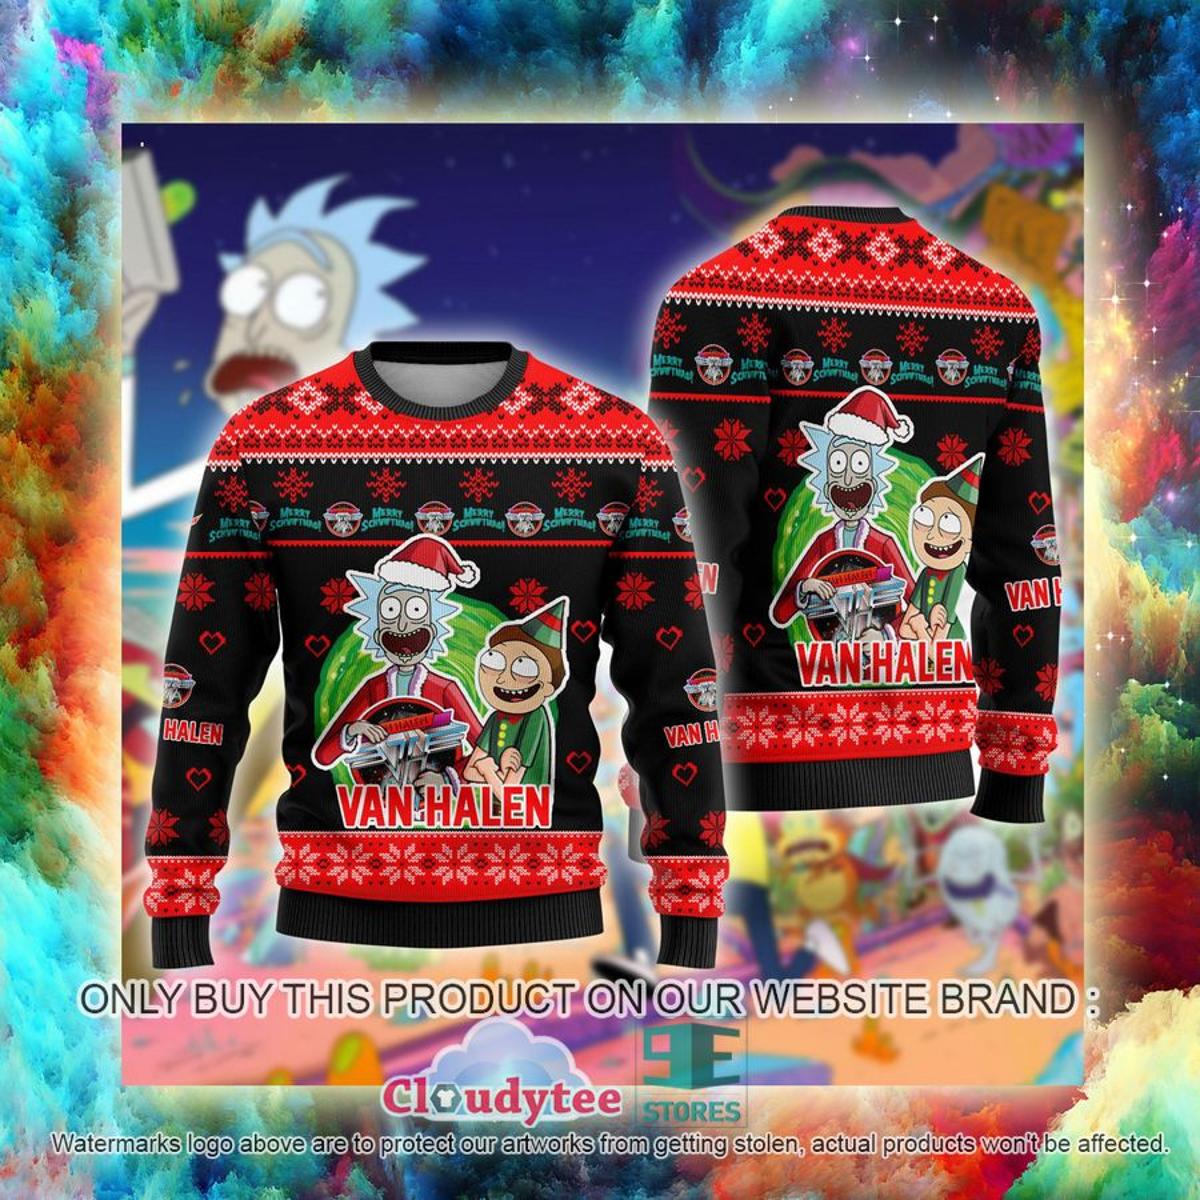 Michael Jackson Ugly Christmas Sweater